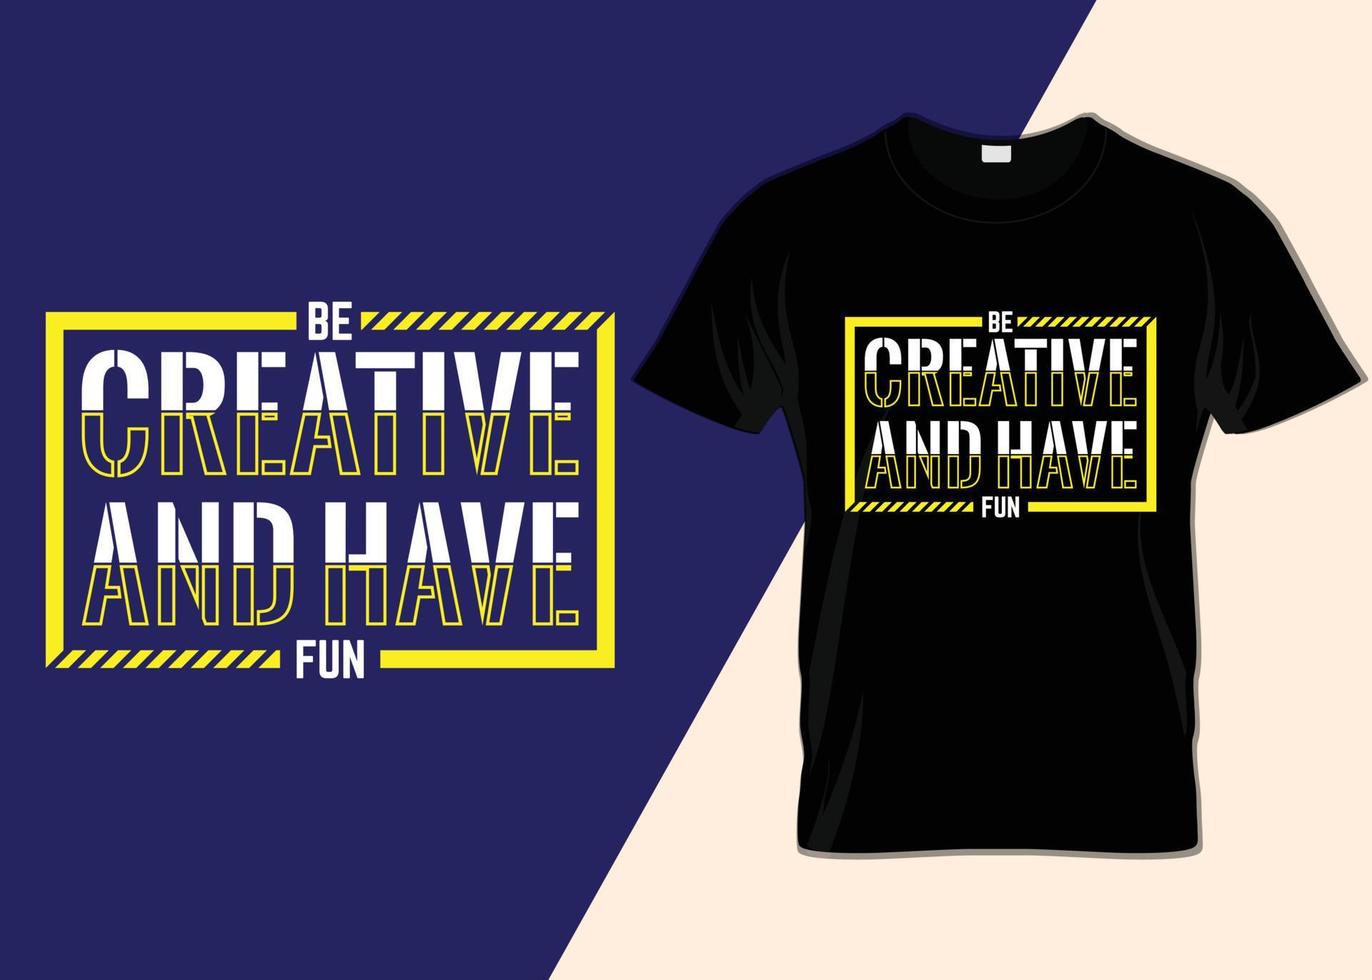 Seien Sie kreativ und haben Sie Spaß beim T-Shirt-Design vektor